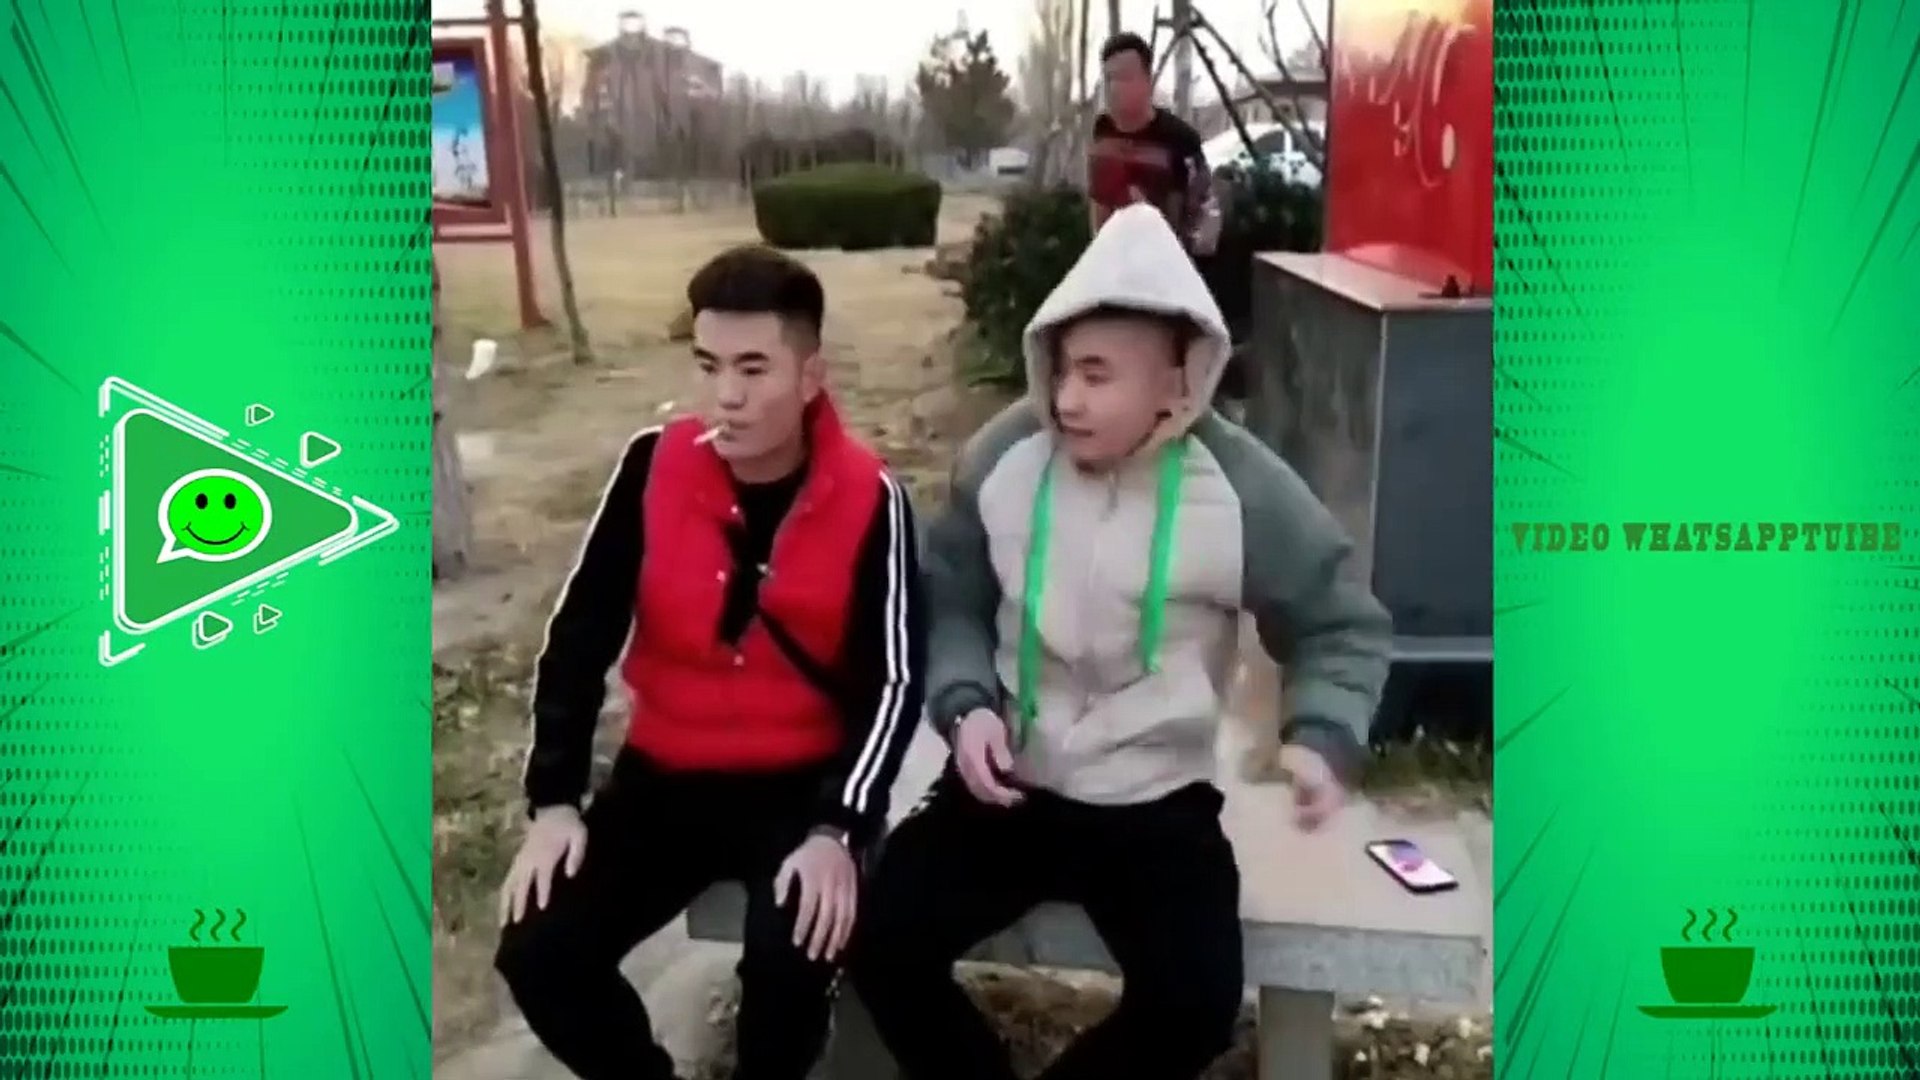 مقالب صينية #158 - اضحك حتى الموت على مقالب الصينيين - 2018 - video  Dailymotion